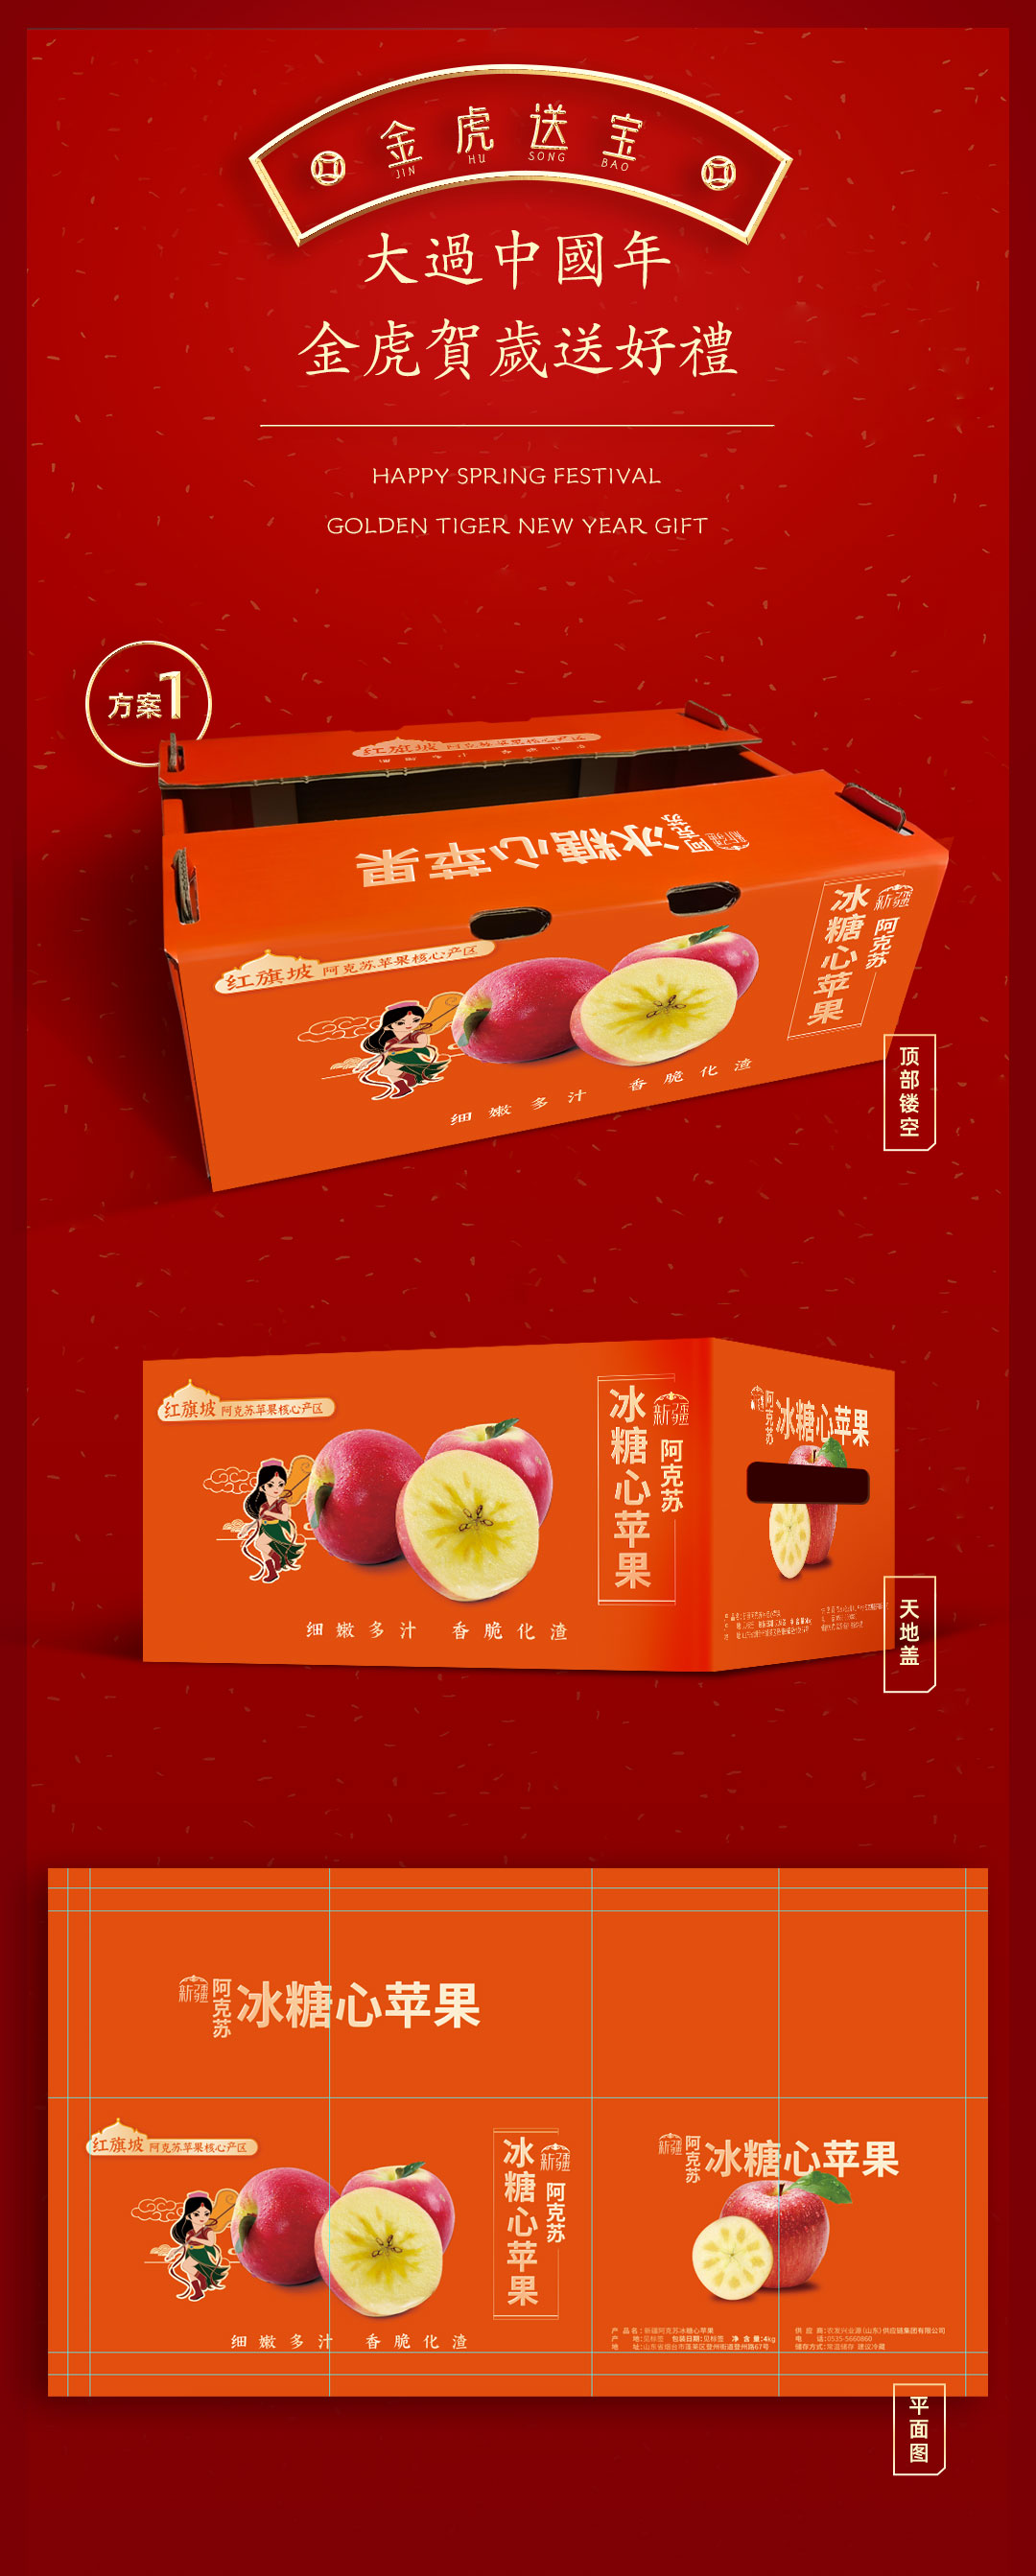 山东烟台富士苹果包装